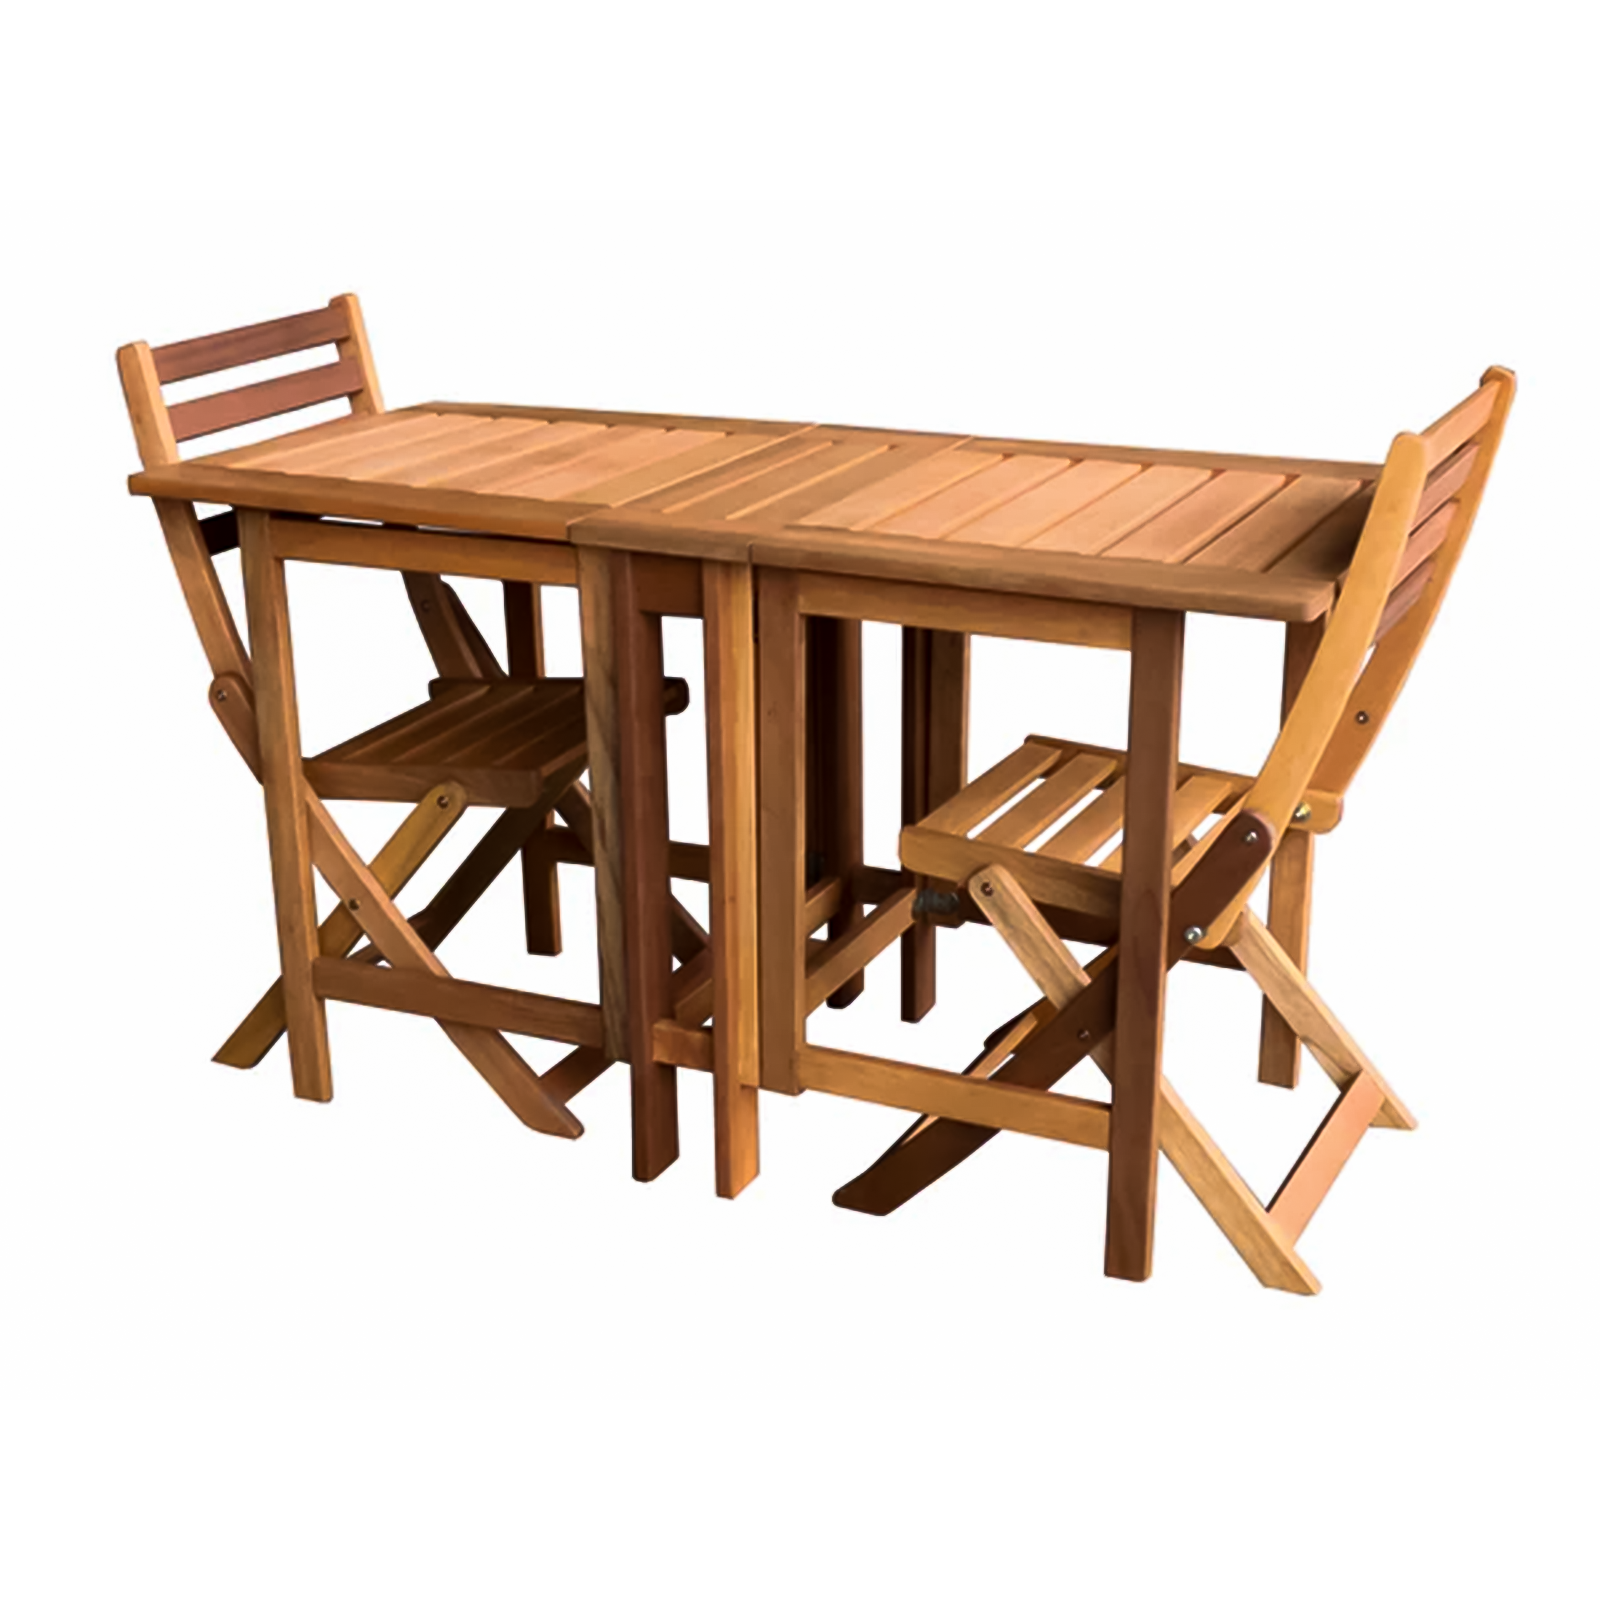 Set Impression da pranzo in legno massello sedia e tavolo richiudibile